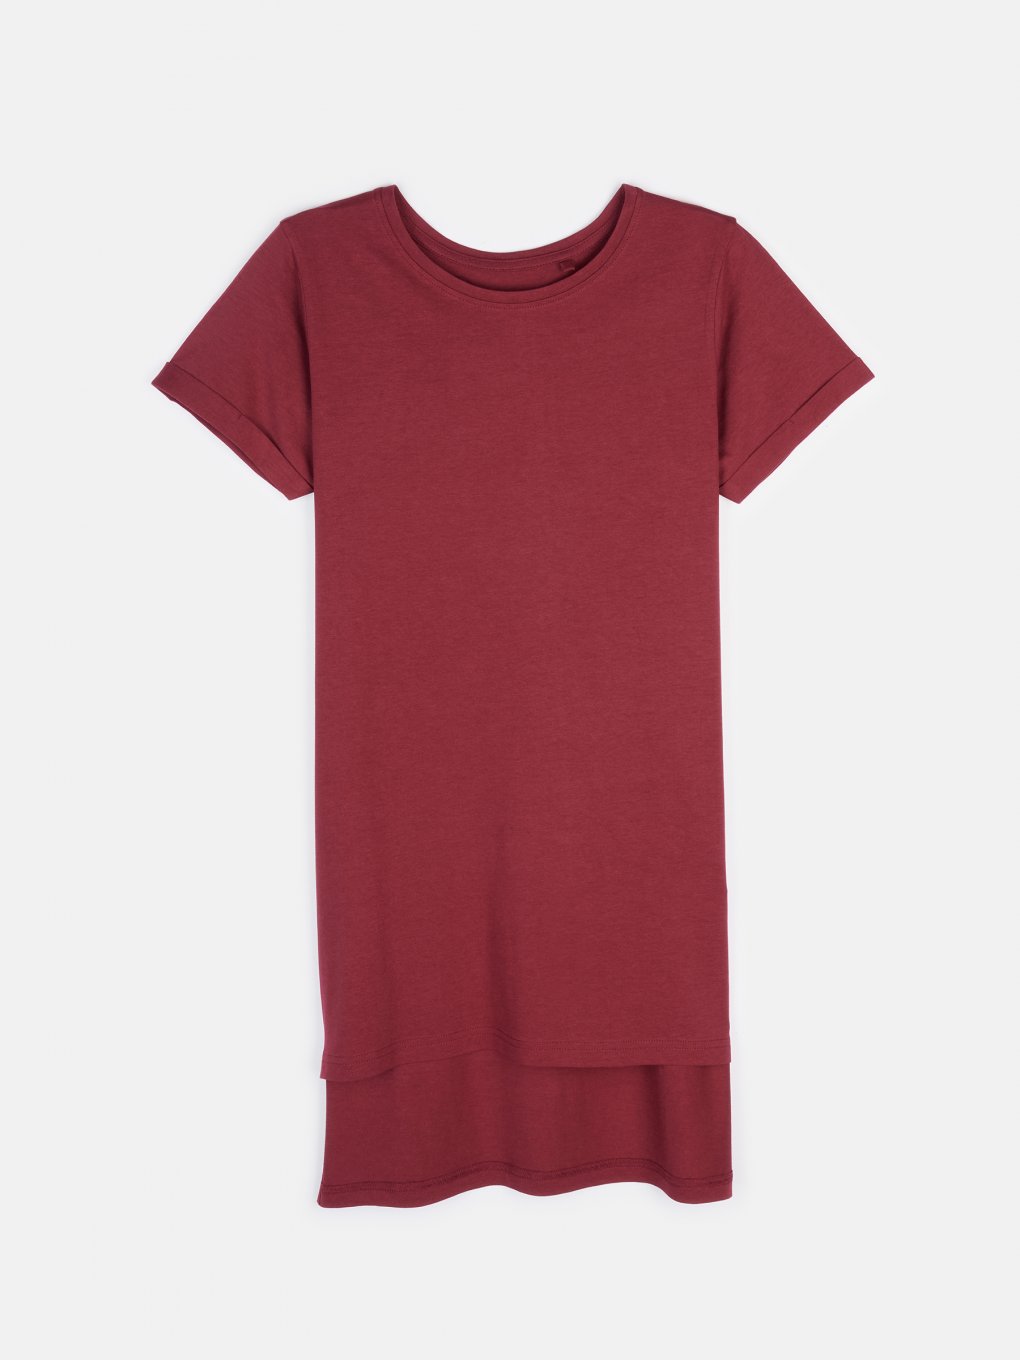 Predĺžené základné basic bavlnené tričko s krátkym rukávom dámske